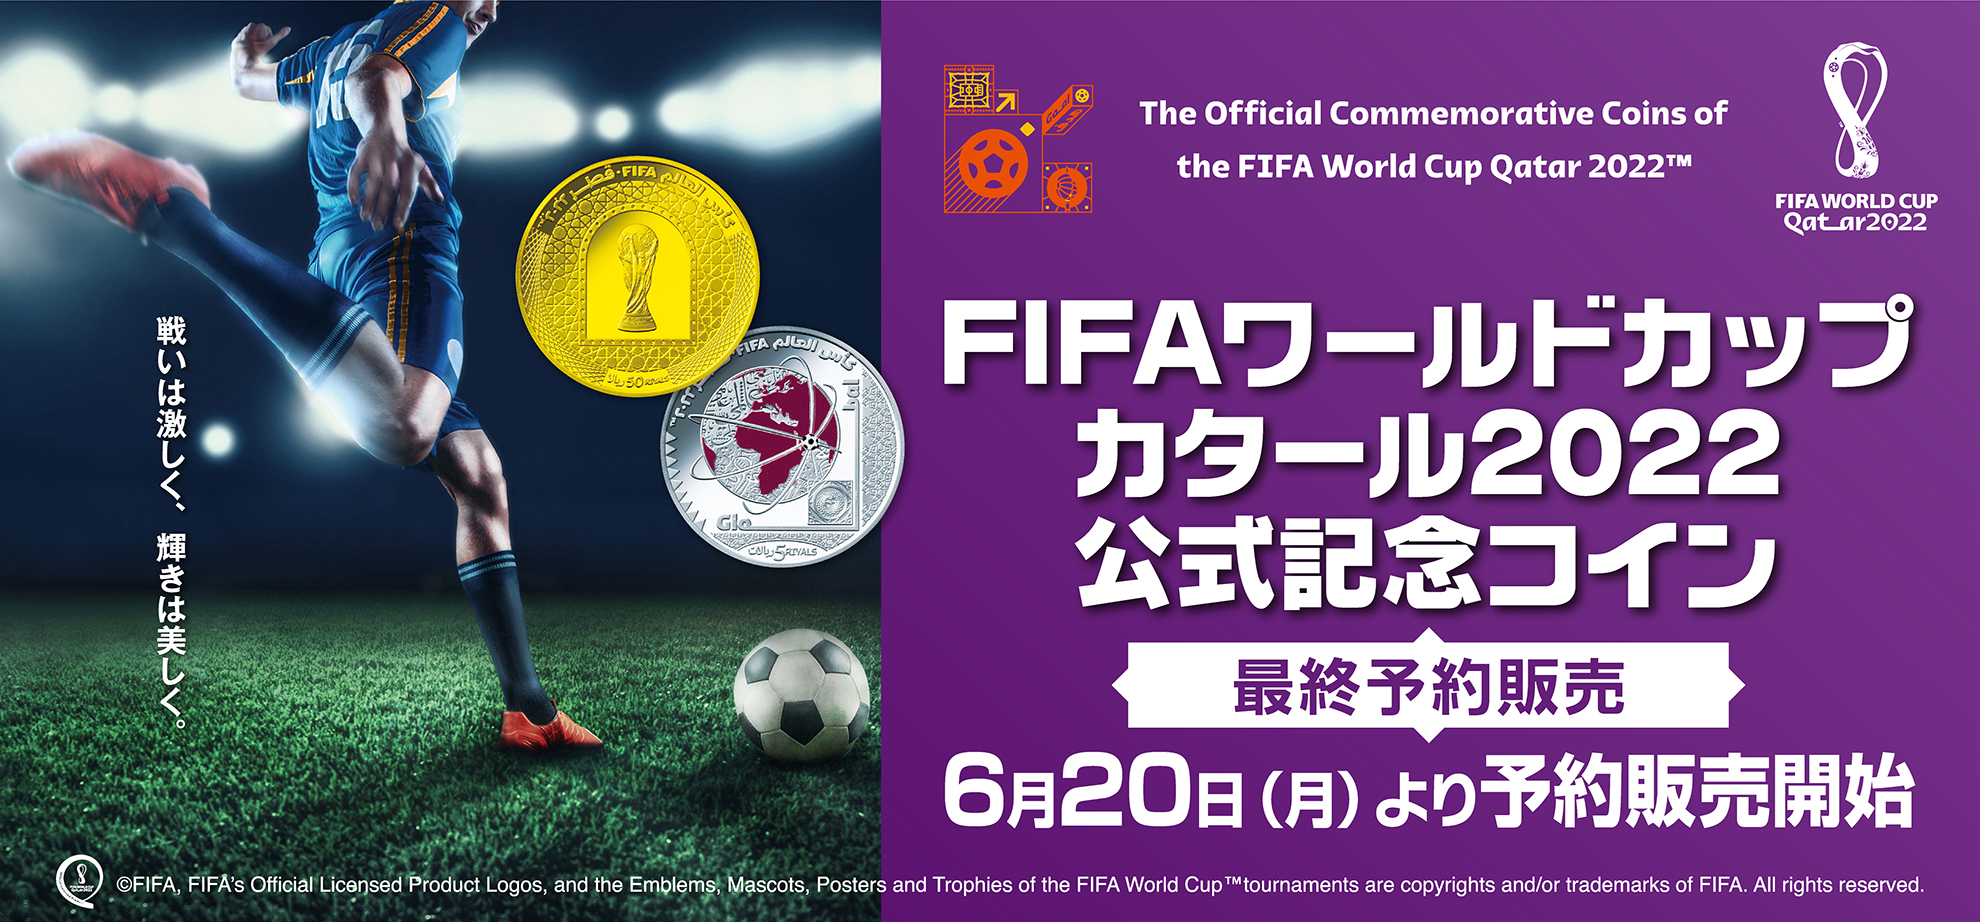 FIFAワールドカップ カタール2022 公式記念コイン 最終予約販売